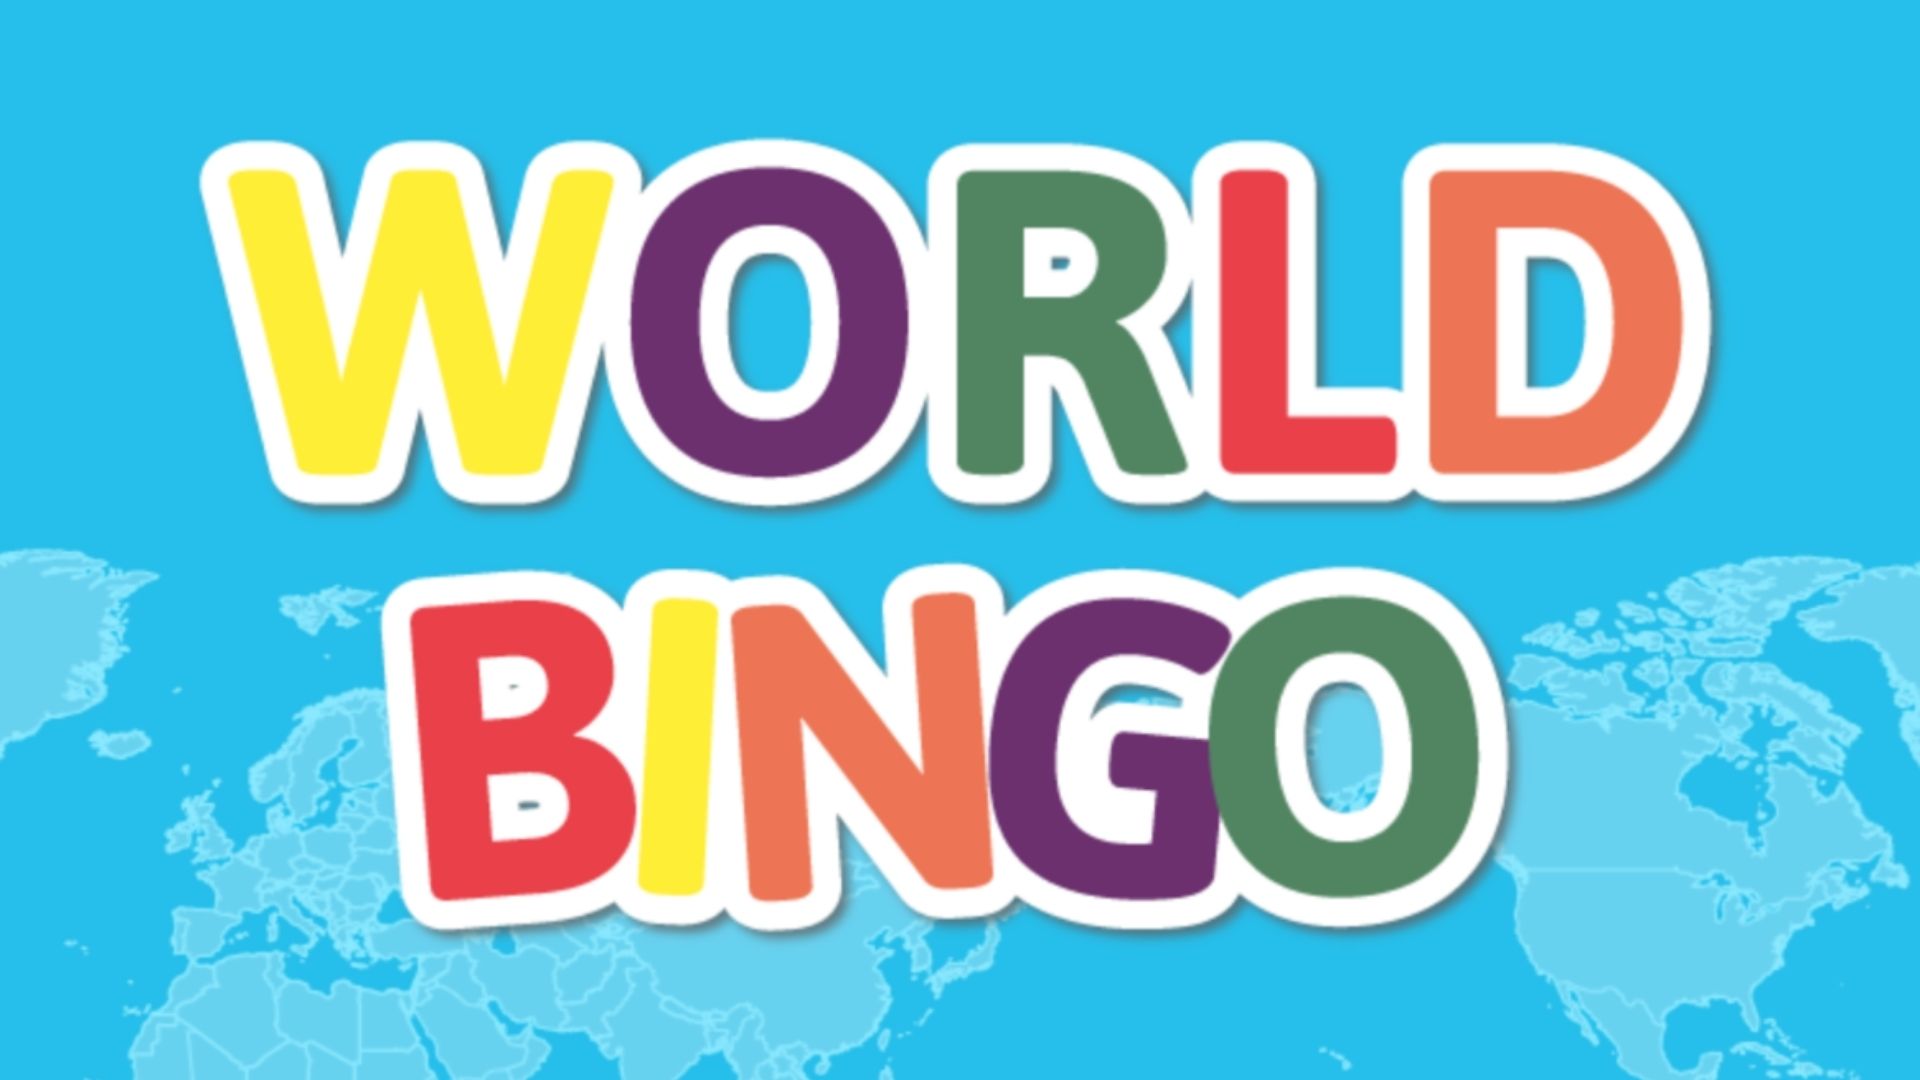 Cómo el bingo se convirtió en una idea multimillonaria